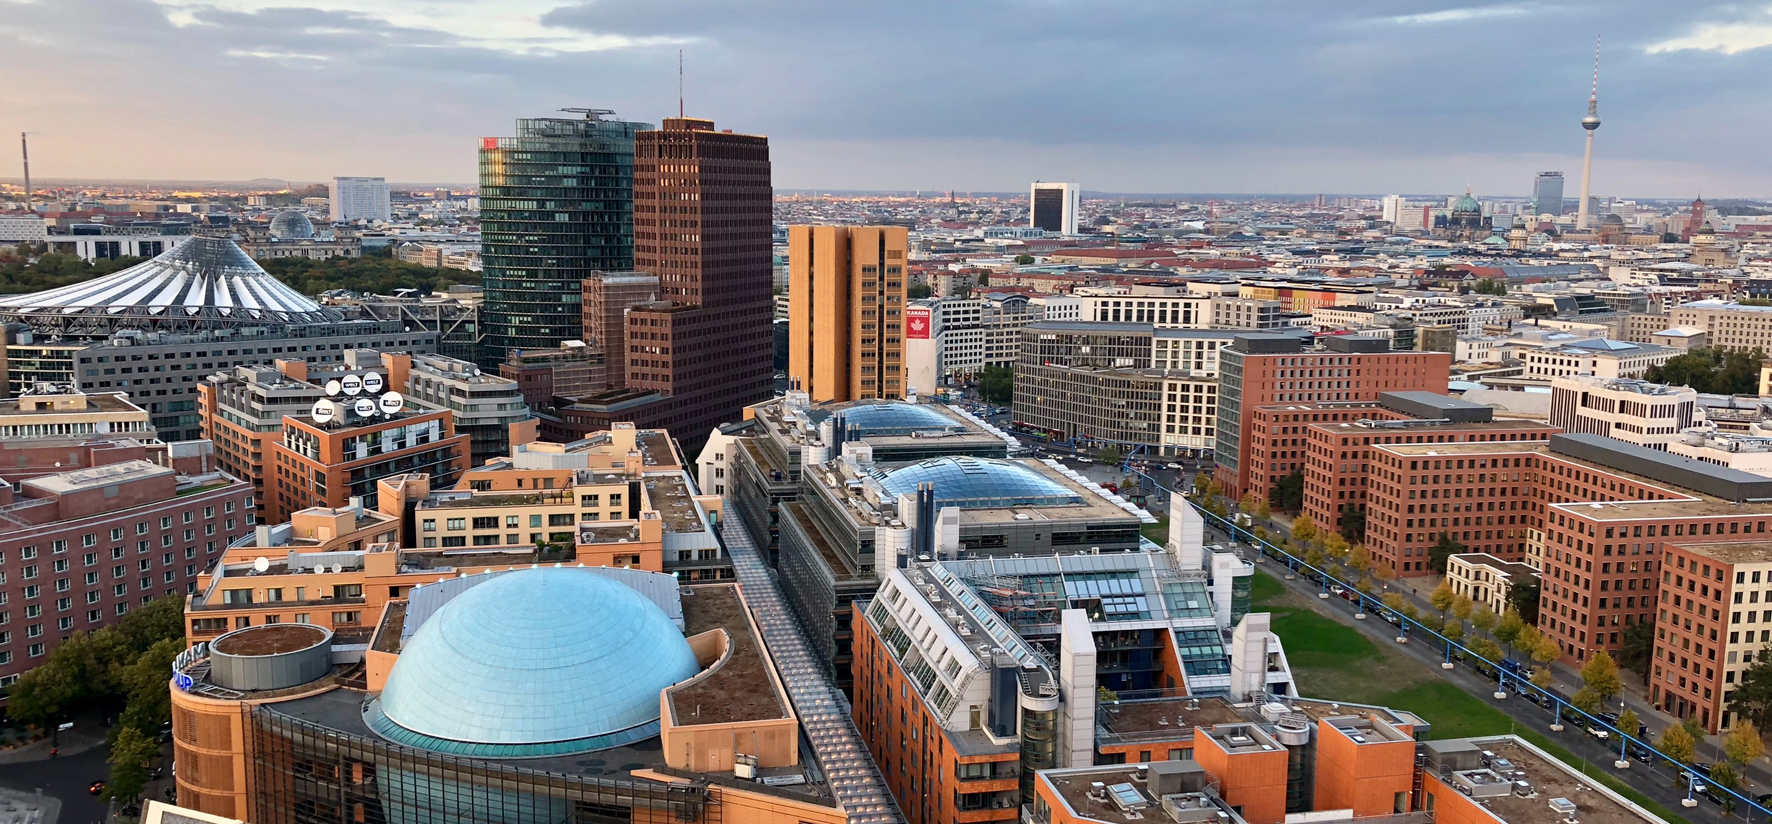 Luftbild von Großberlin. Bild zeigt vielen Berlins berühmte Gebäude wie die Berliner Philharmonie, die DB-Zentrale.